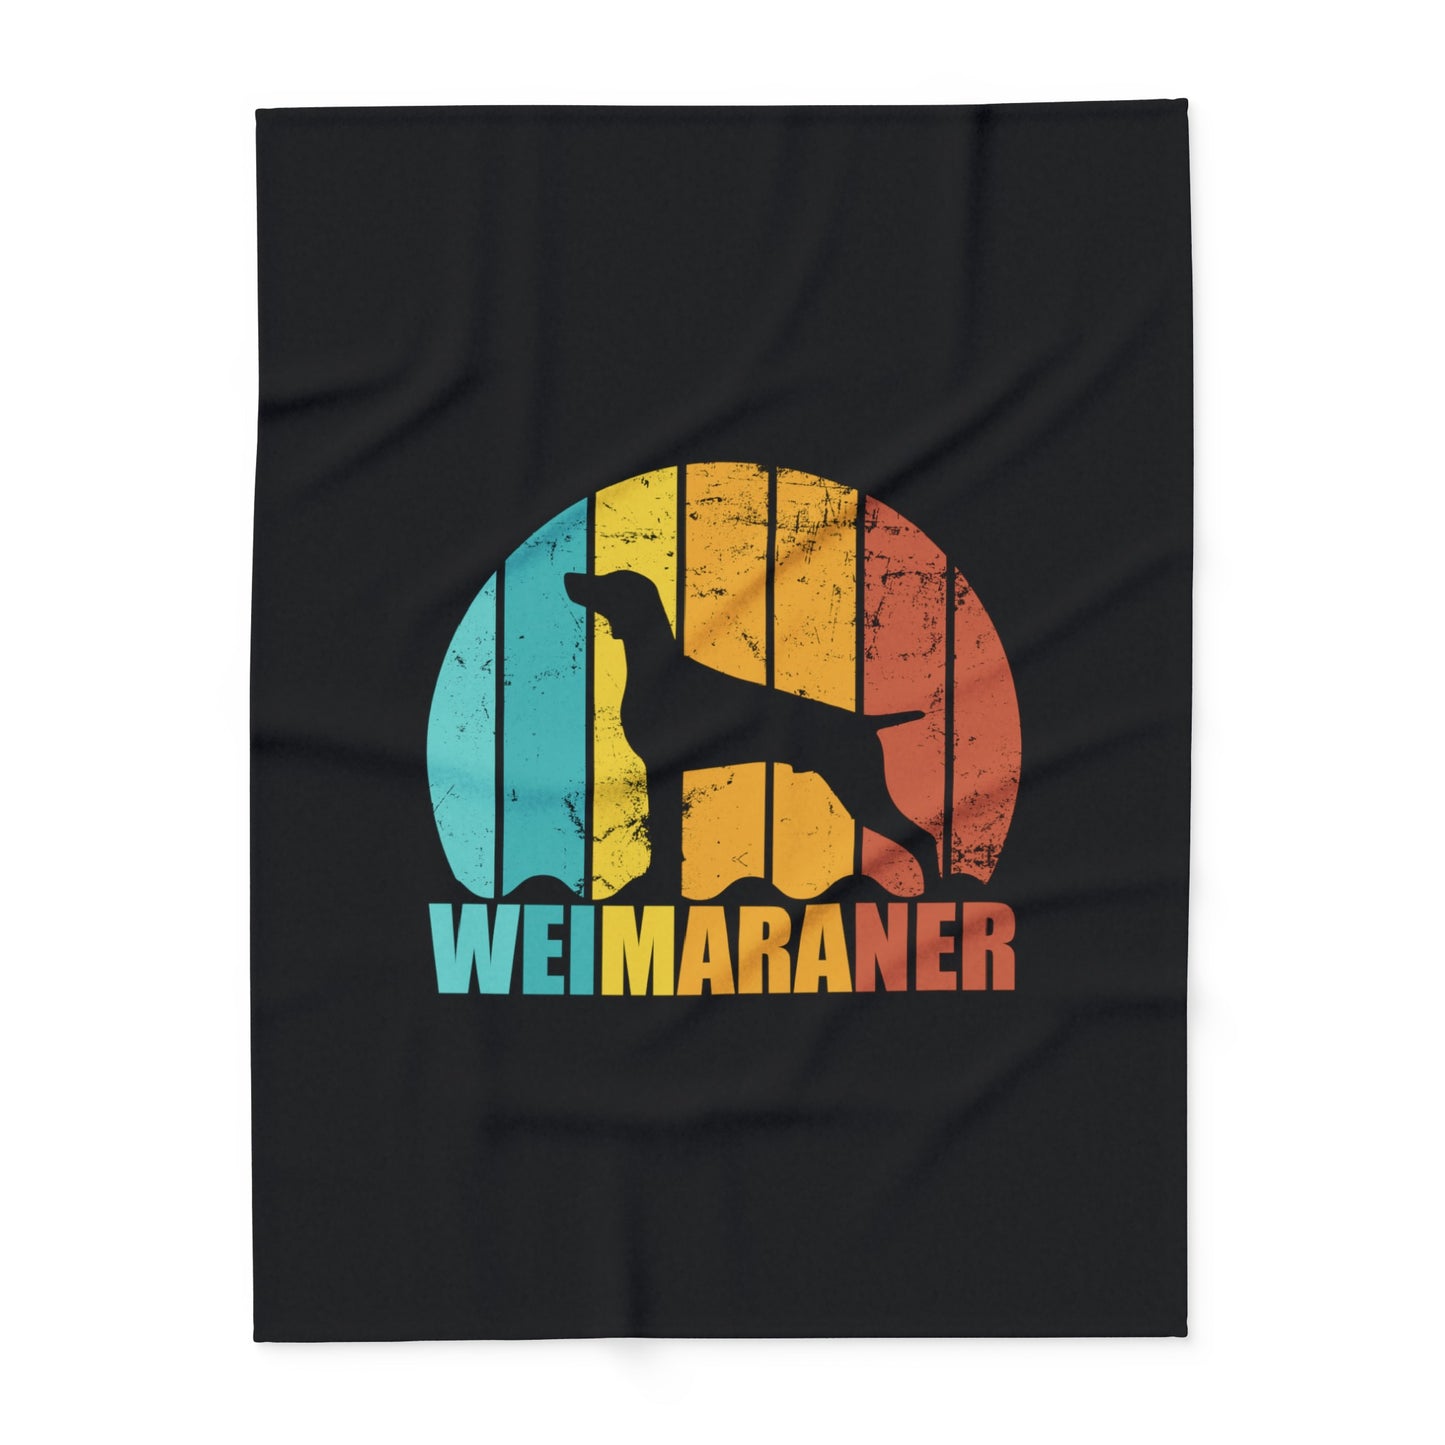 Weimaraner Fleece Blanket